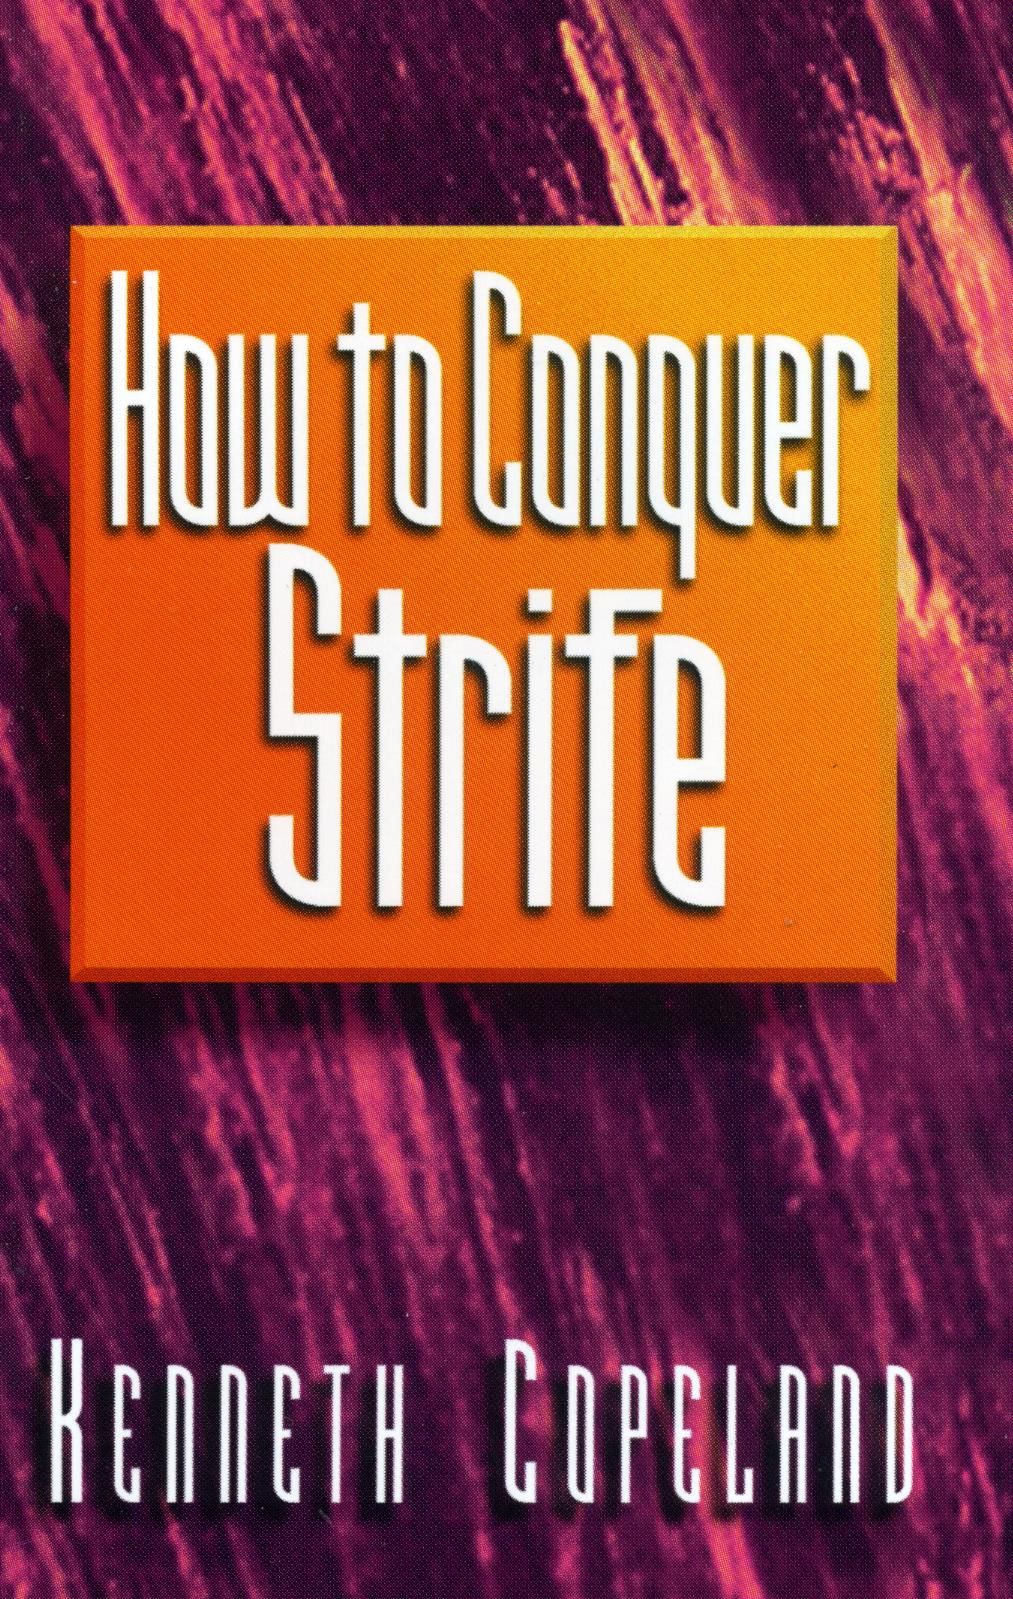 Englische Bücher - K. Copeland: How to conquer strife?